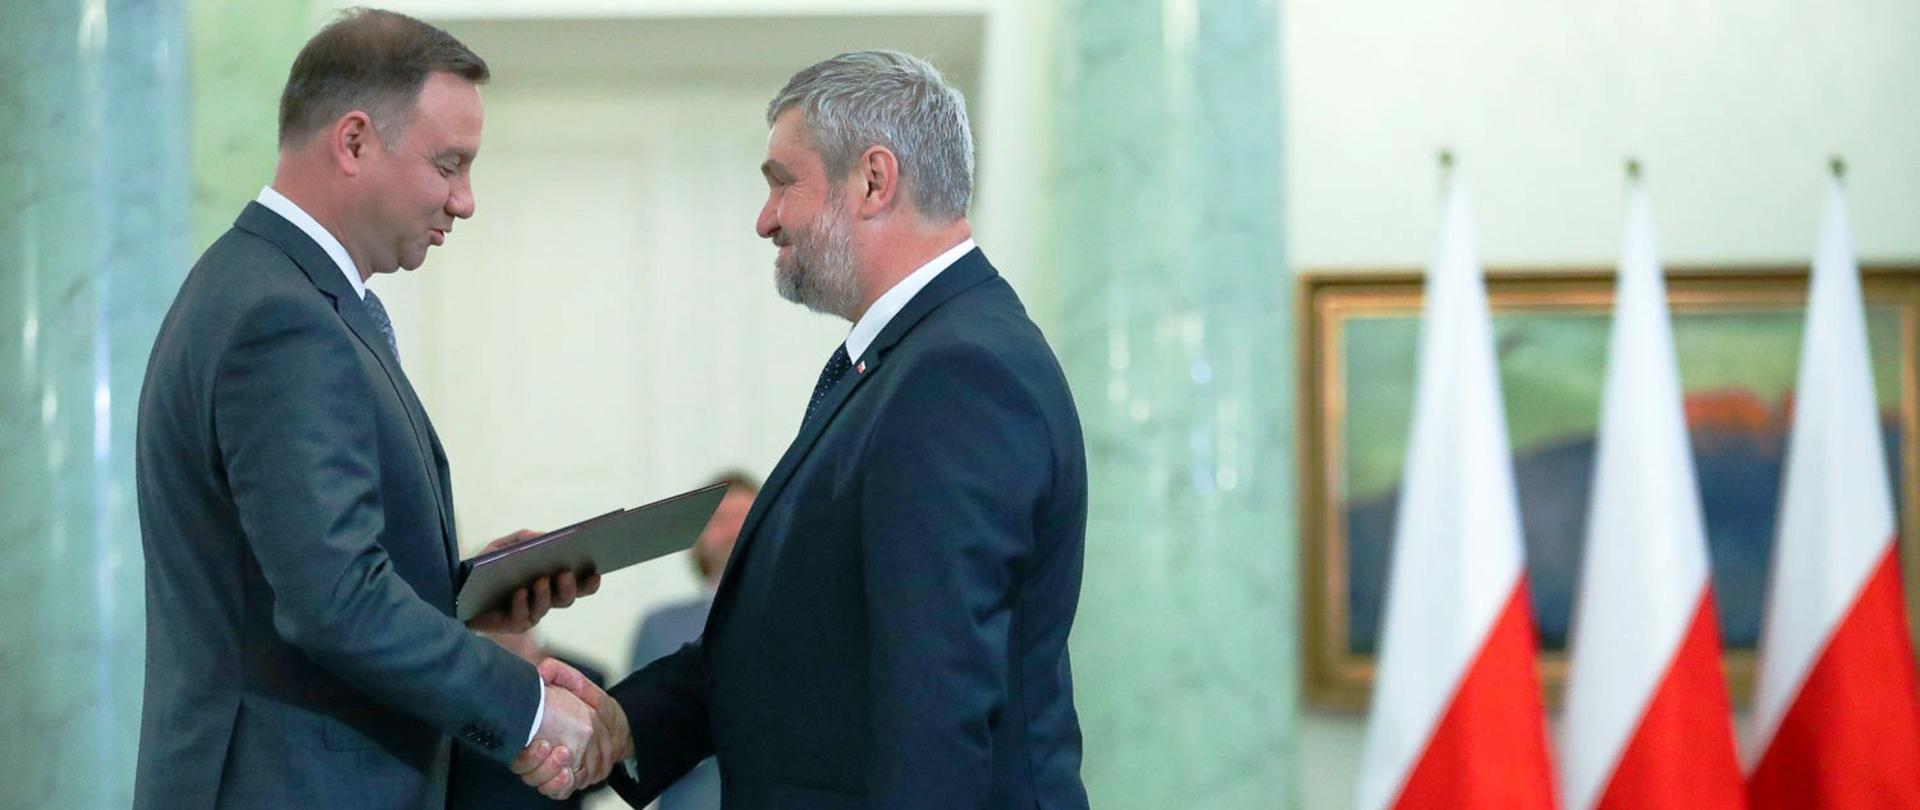 Prezydent Andrzej Duda wręcza Janowi Krzysztofowi Ardanowskiemu powołanie na ministra rolnictwa i rozwoju wsi